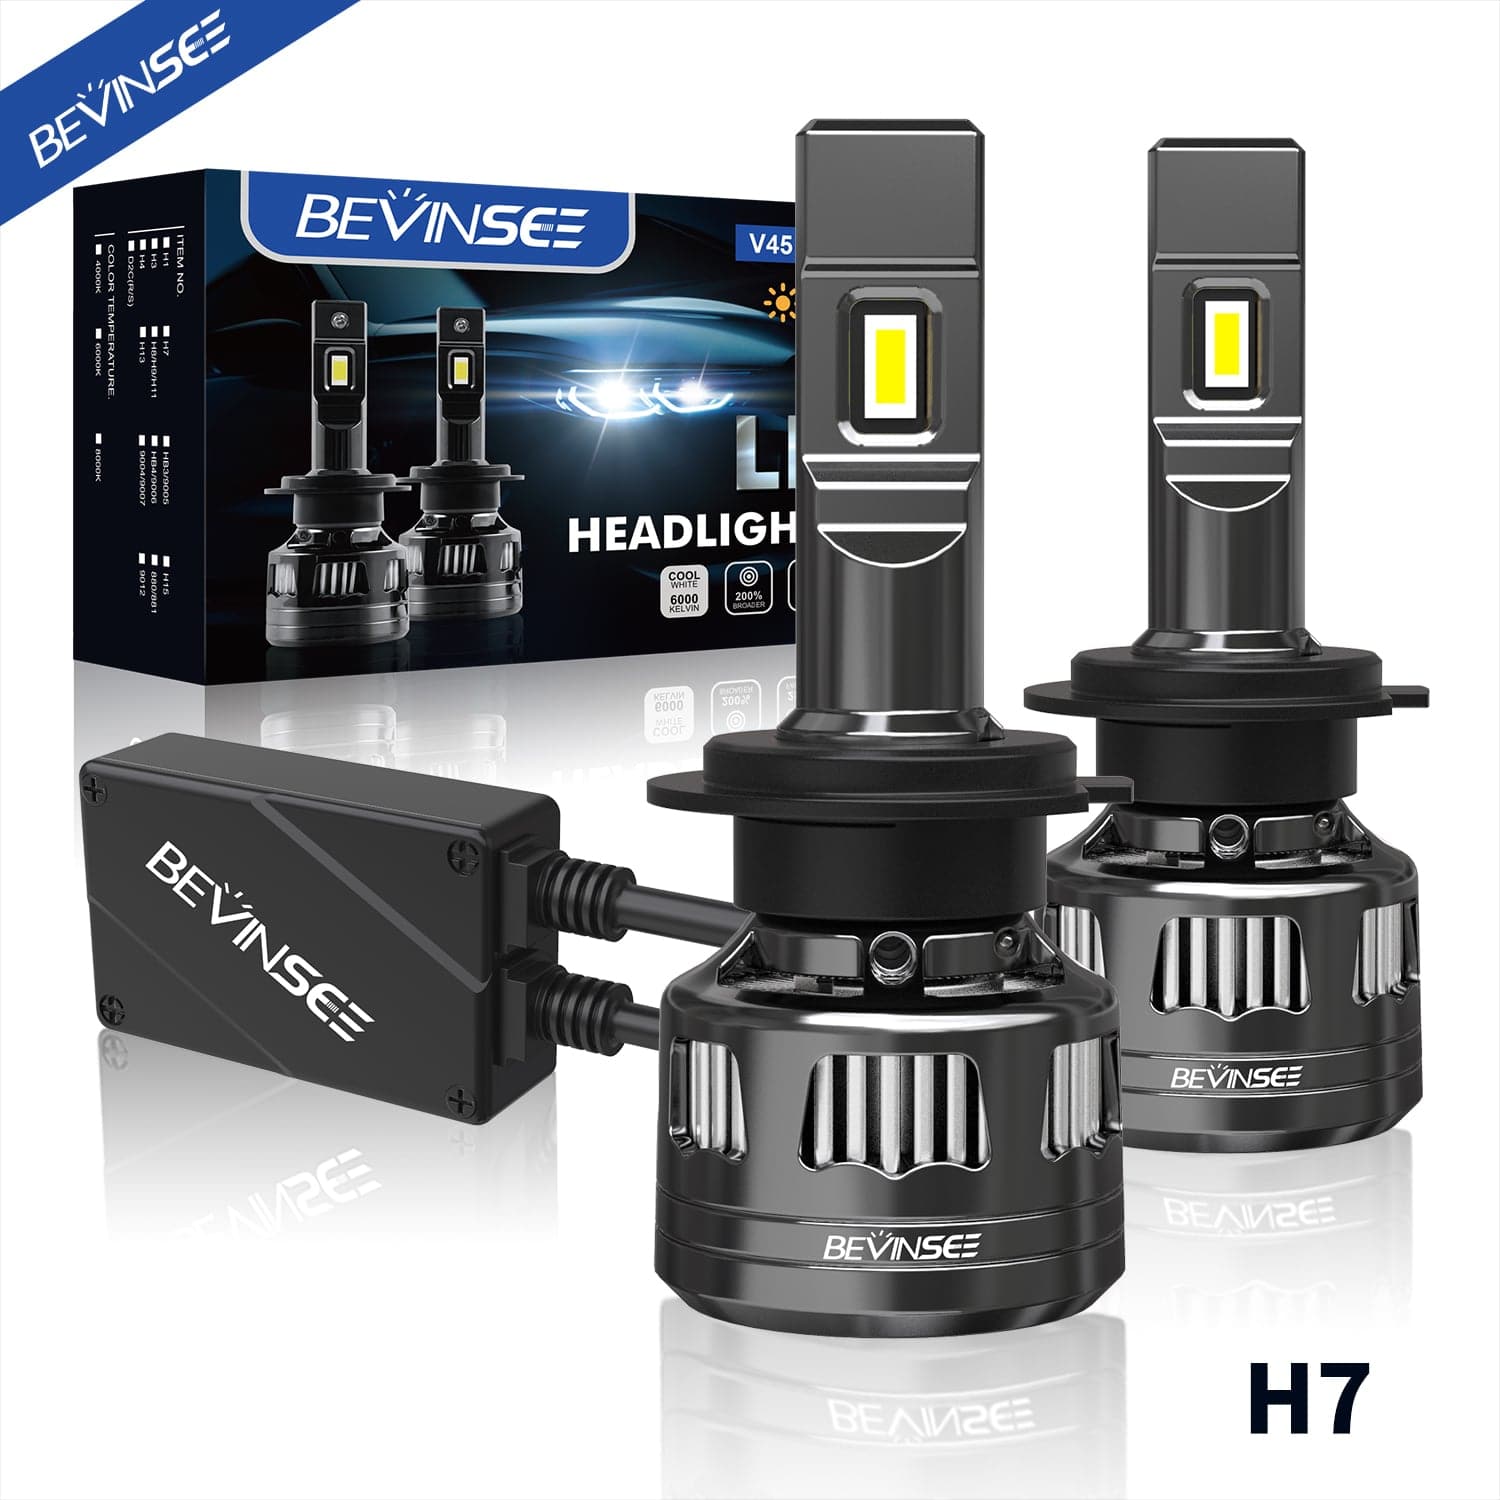 F10R LED, lamp H7 set - Veli store